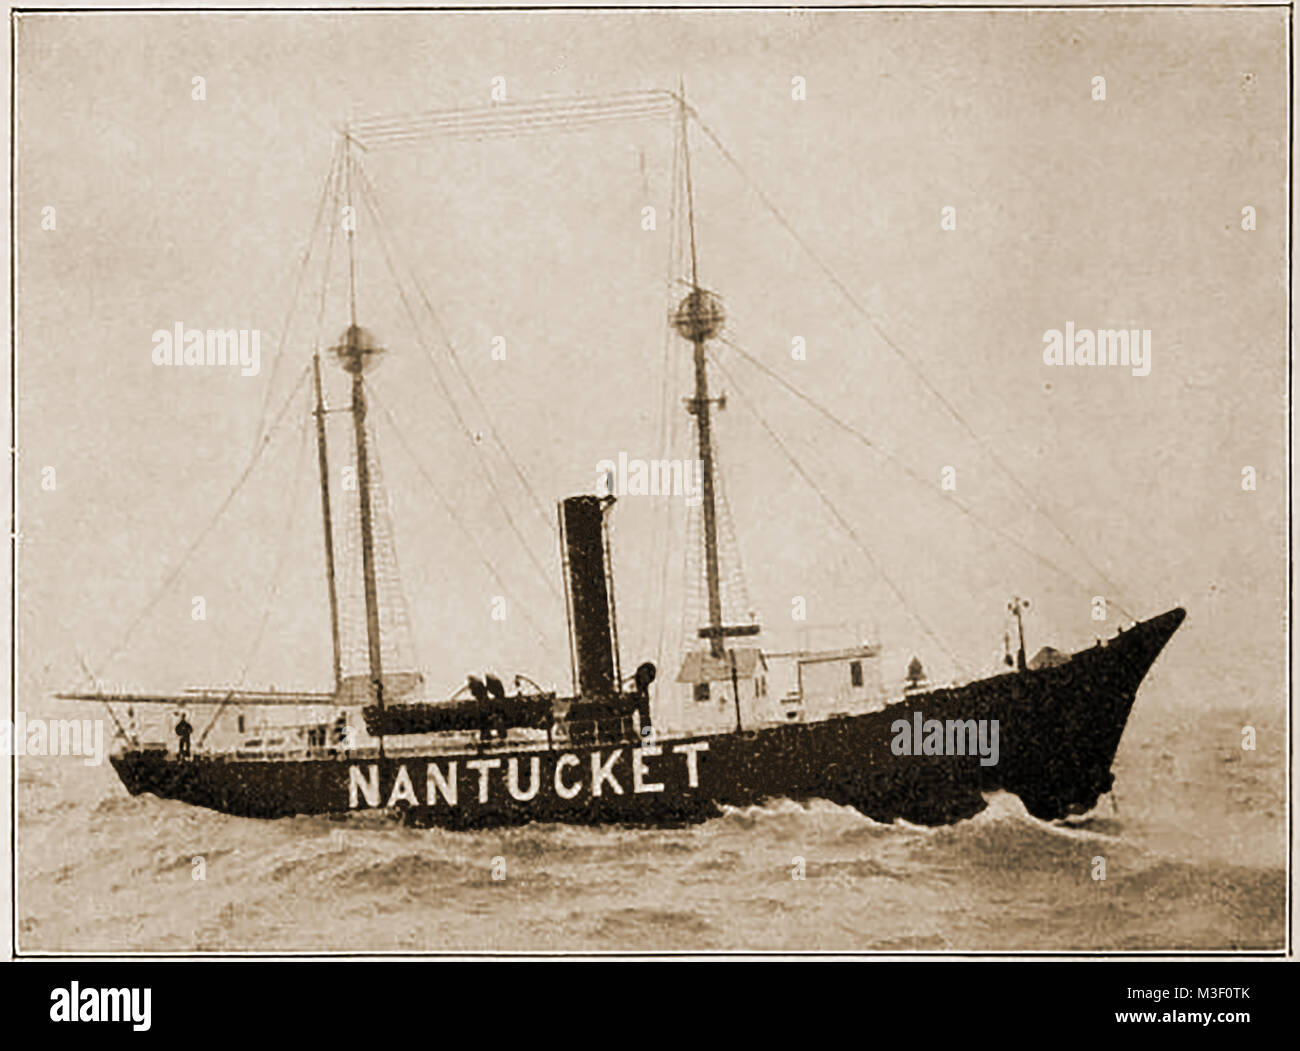 Alte amerikanische Leuchttürme, Licht Stationen und Navigationshilfen - Nantucket Licht Schiff Nr. 85, USA 1923 Stockfoto